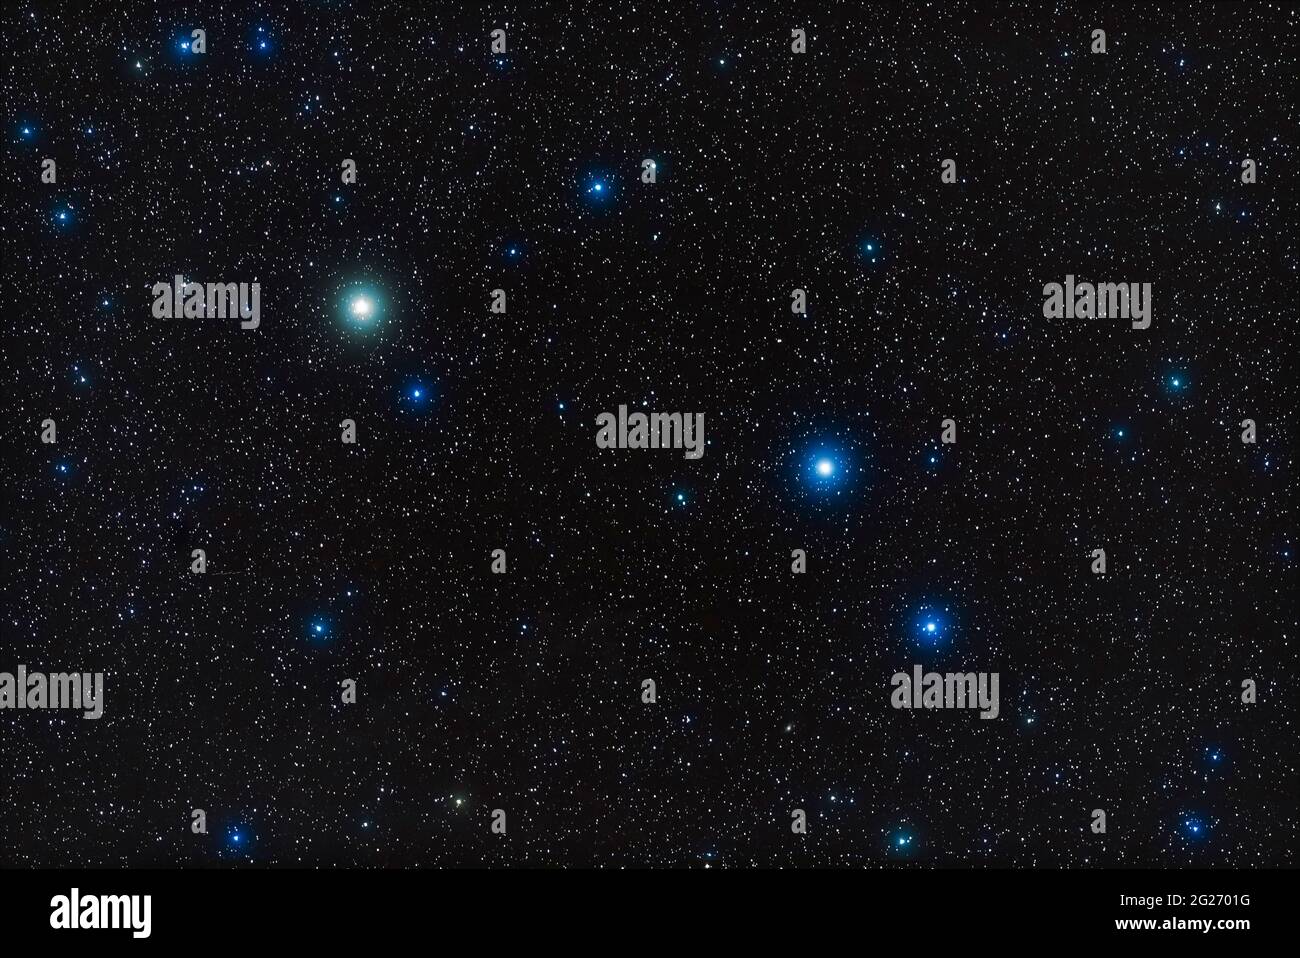 Estrellas brillantes en la constelación de Aries el Ram. Foto de stock